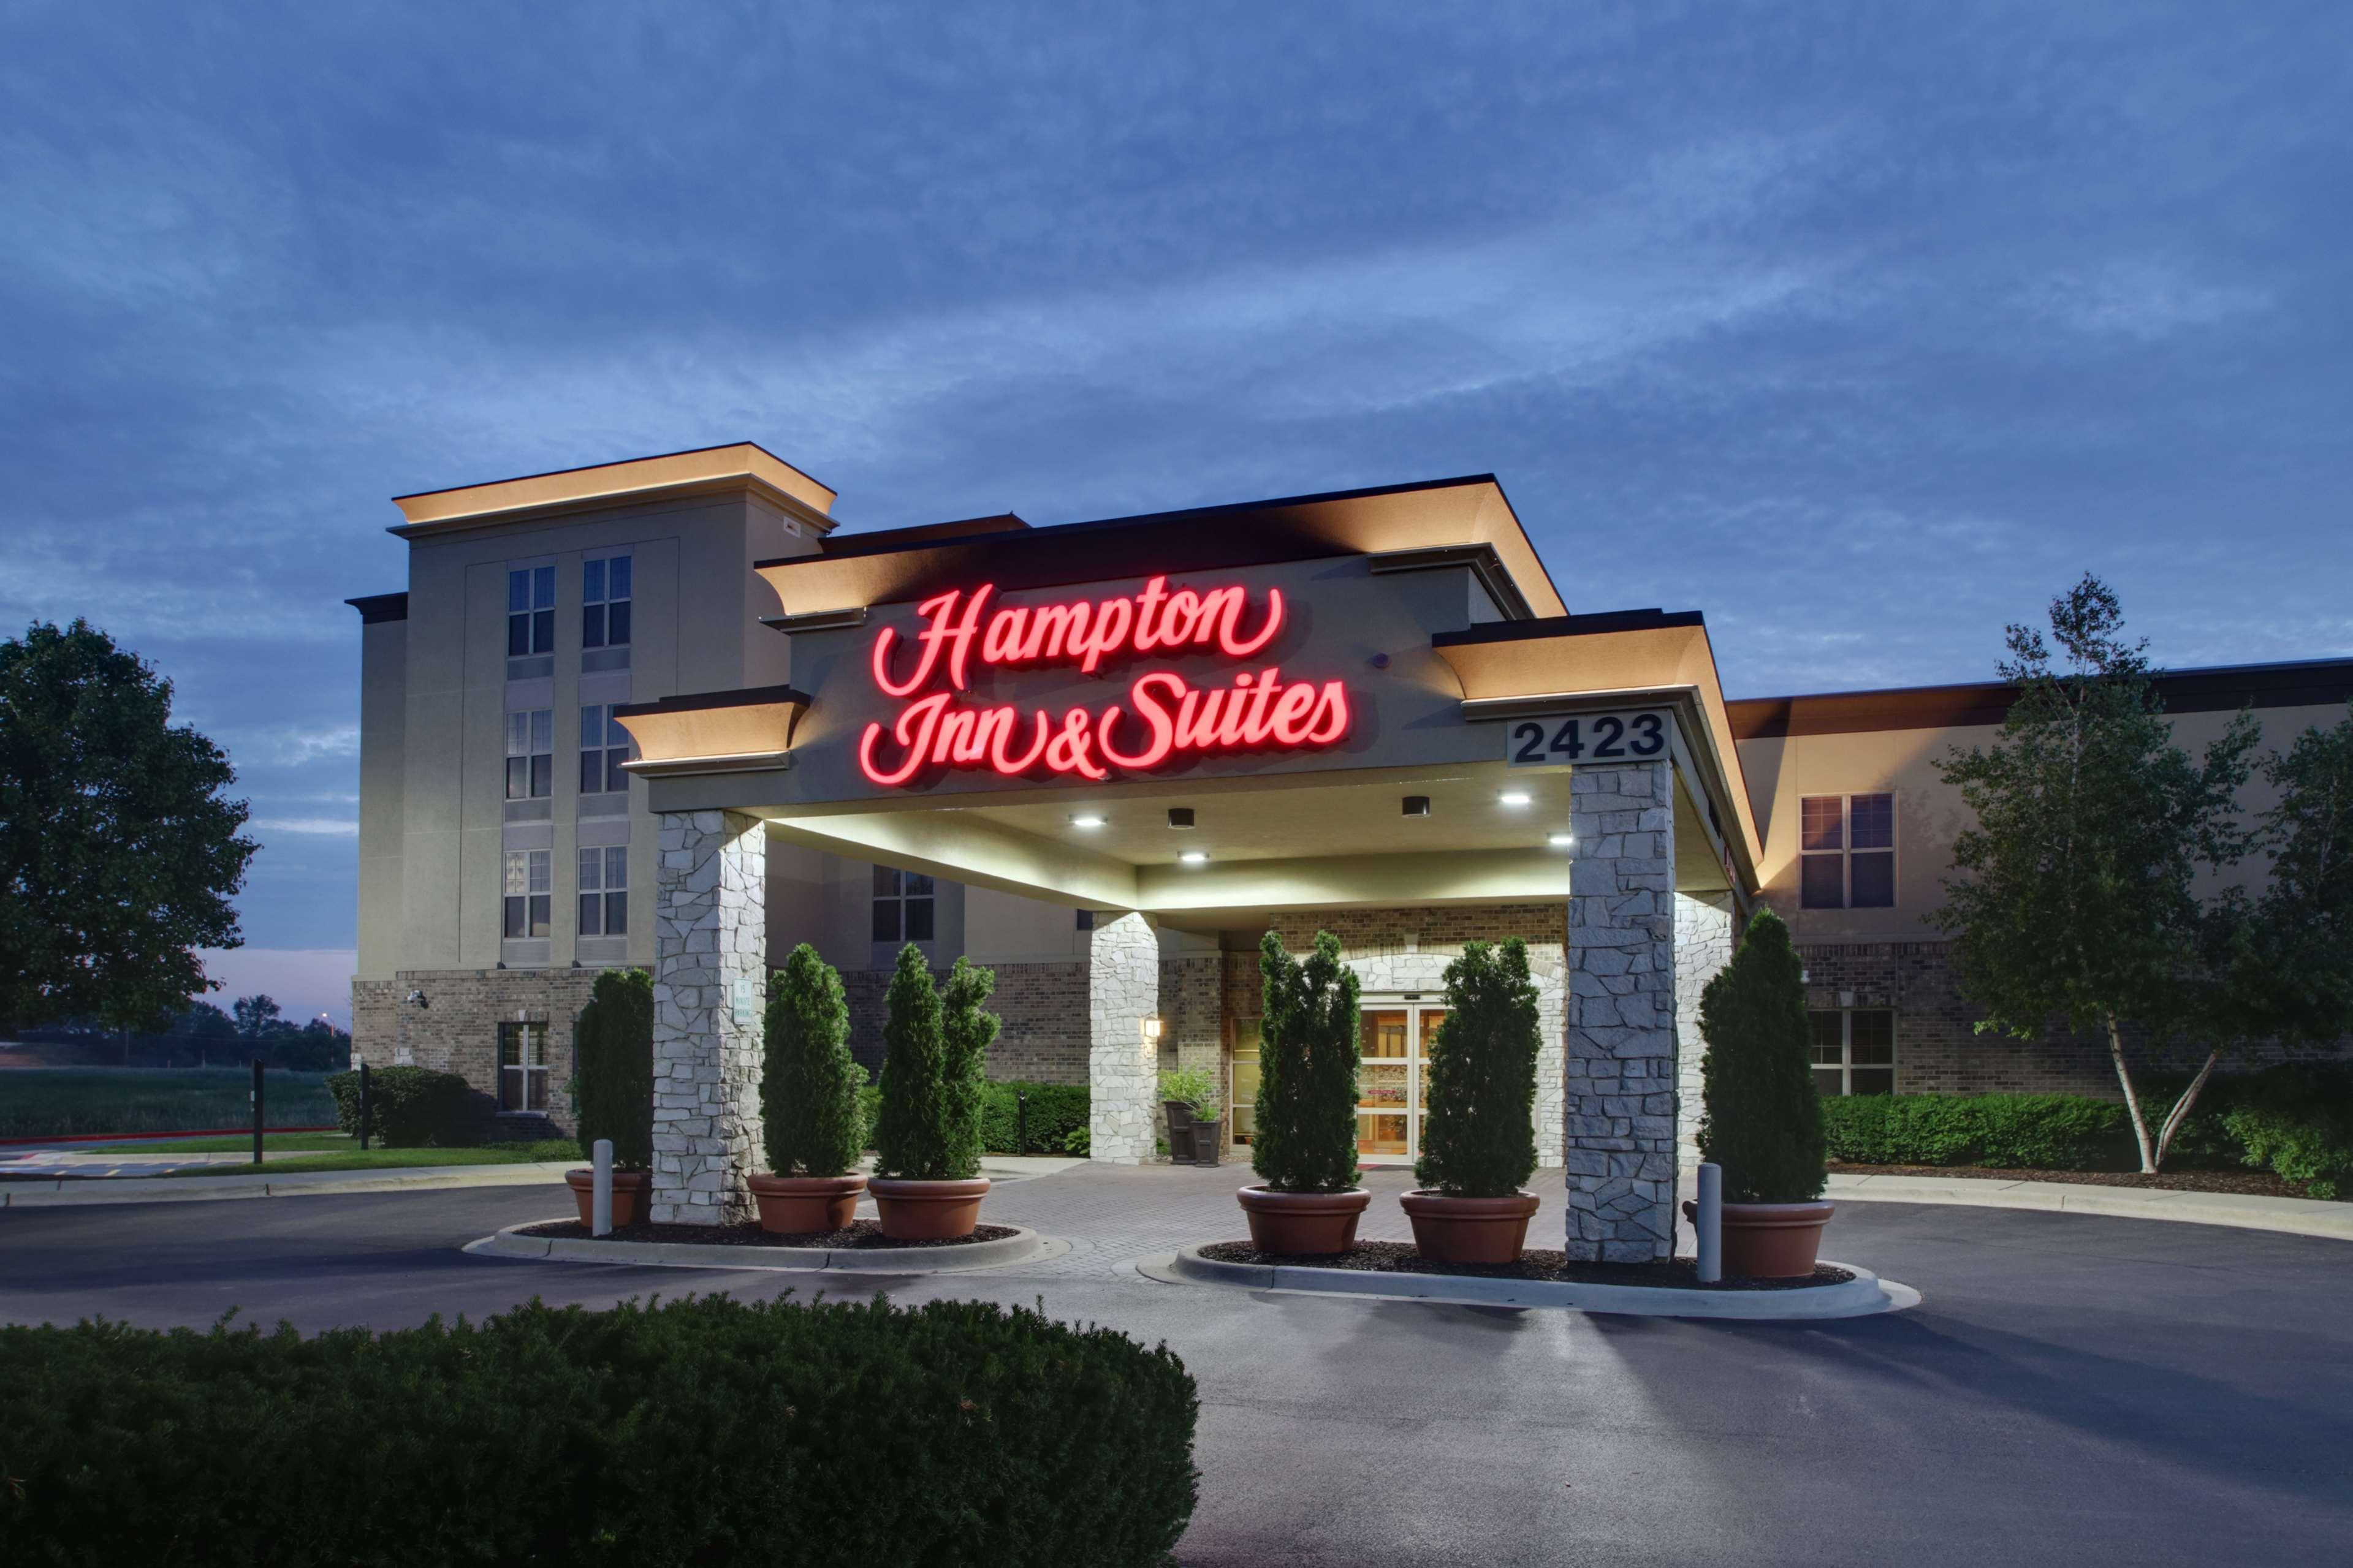 Hampton Inn & Suites Chicago/Aurora image